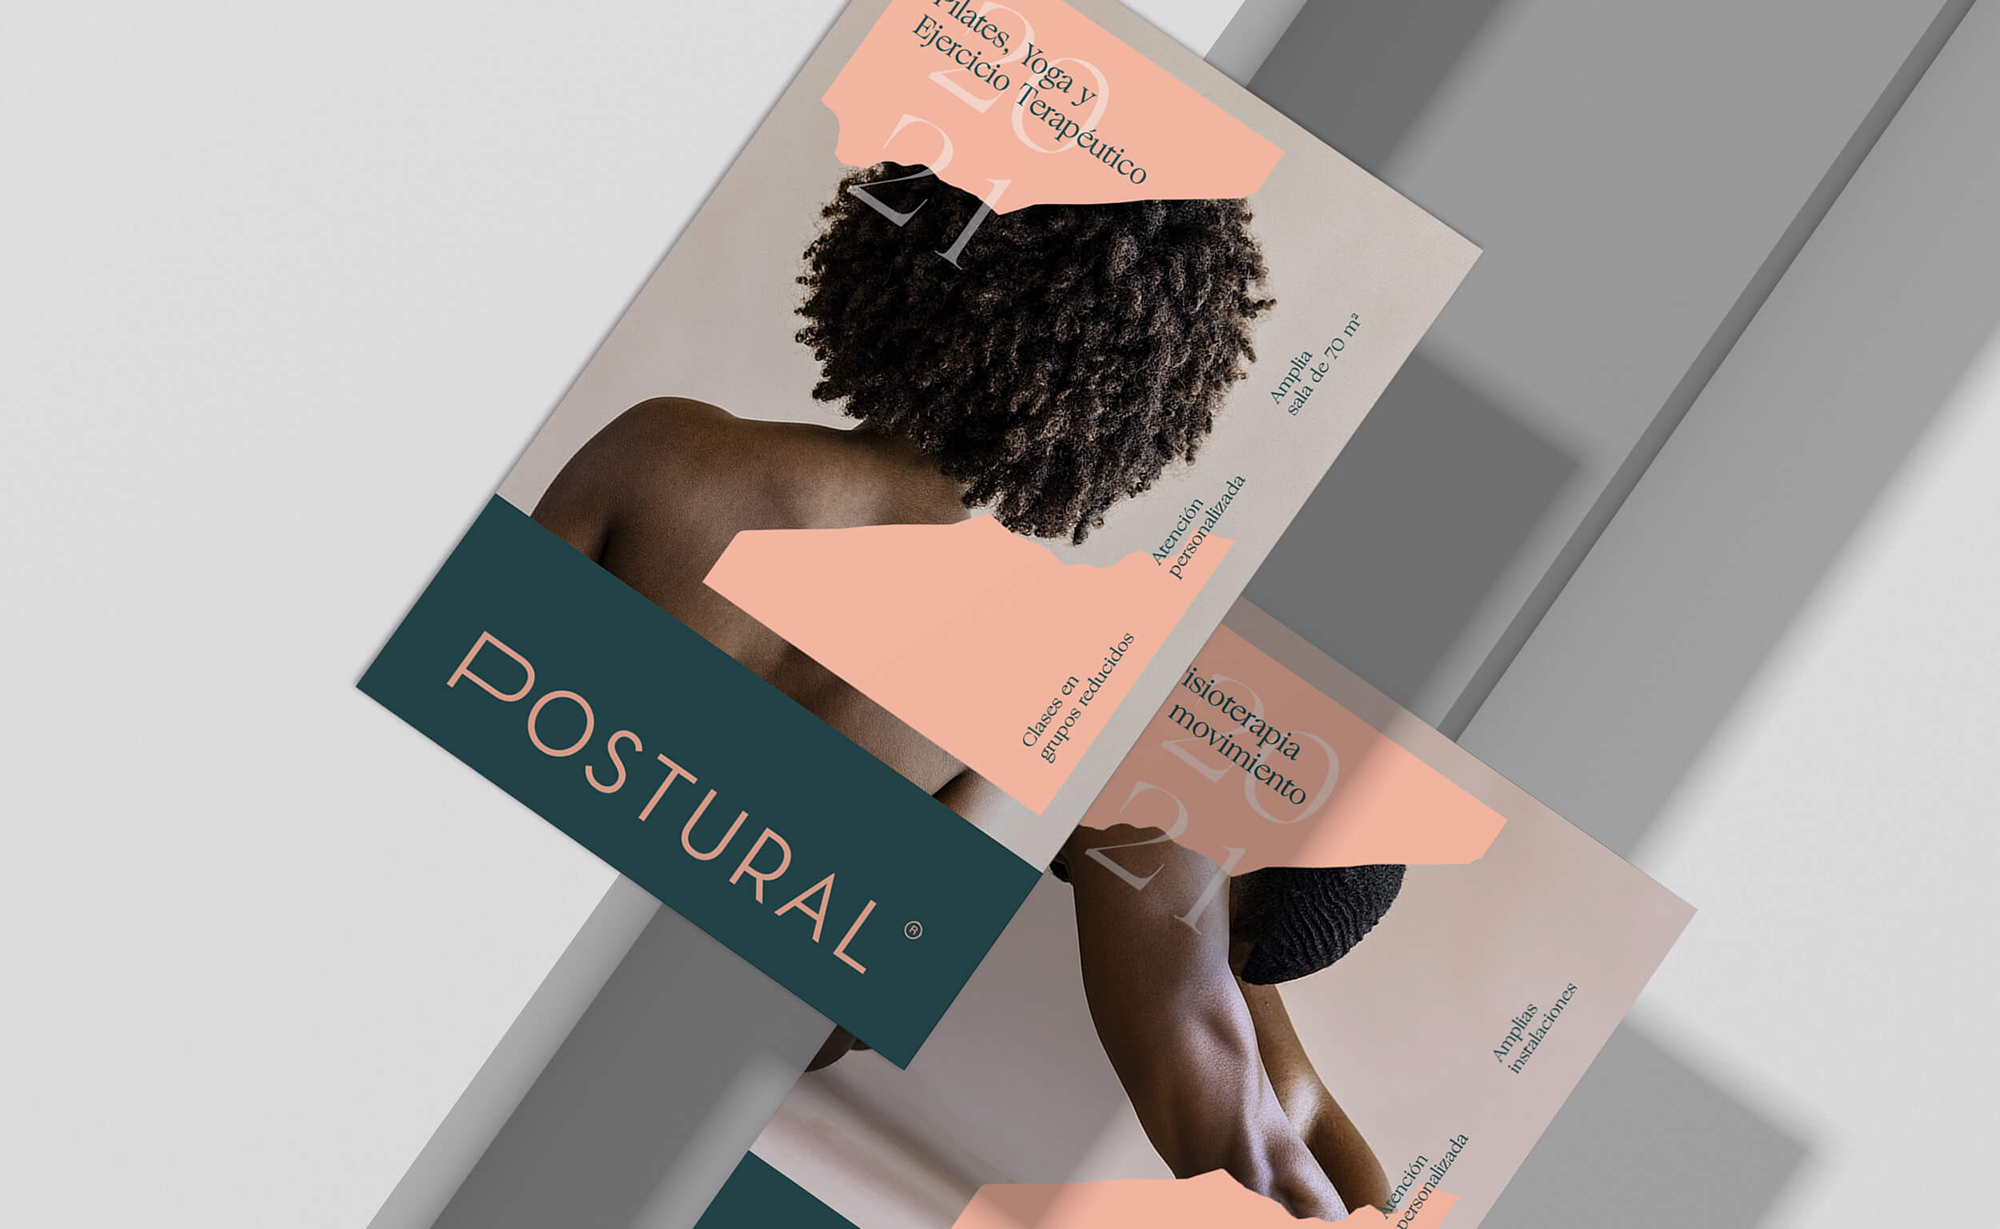 Diseño y desarrollo de identidad visual corporativa para Postural. Posters.